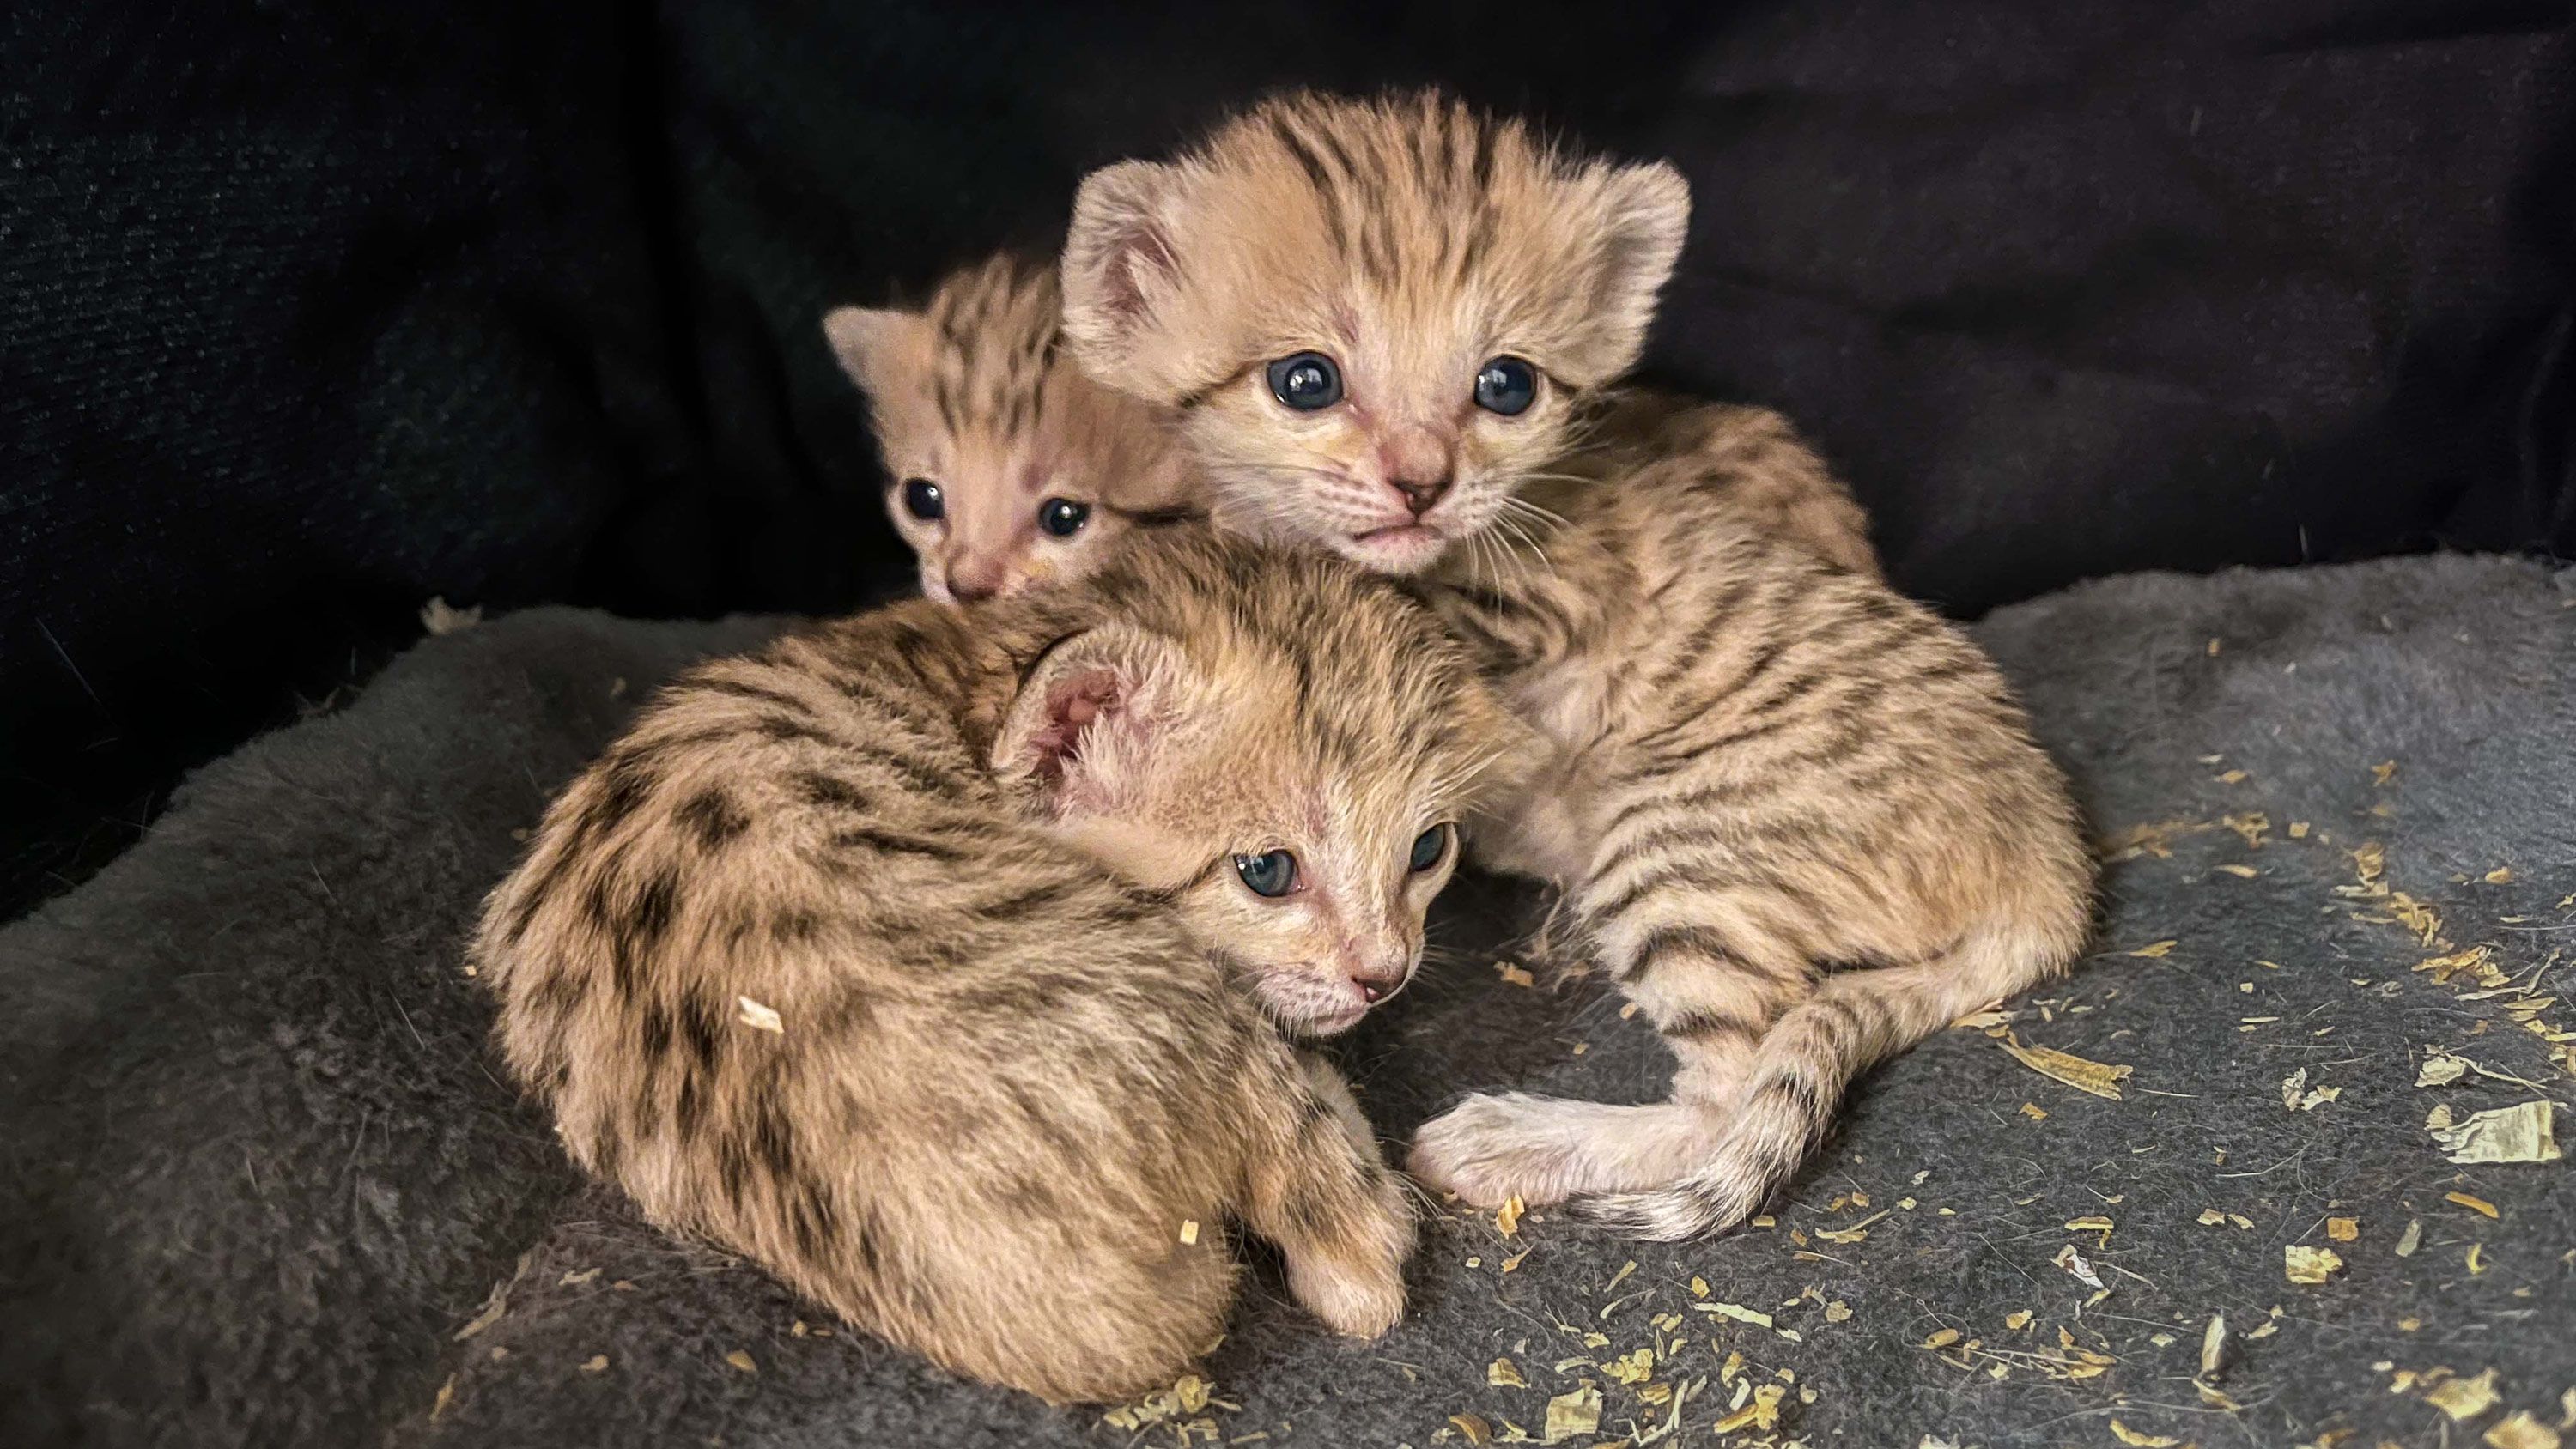 Three sand cat kittens born at North Carolina Zoo | CNN